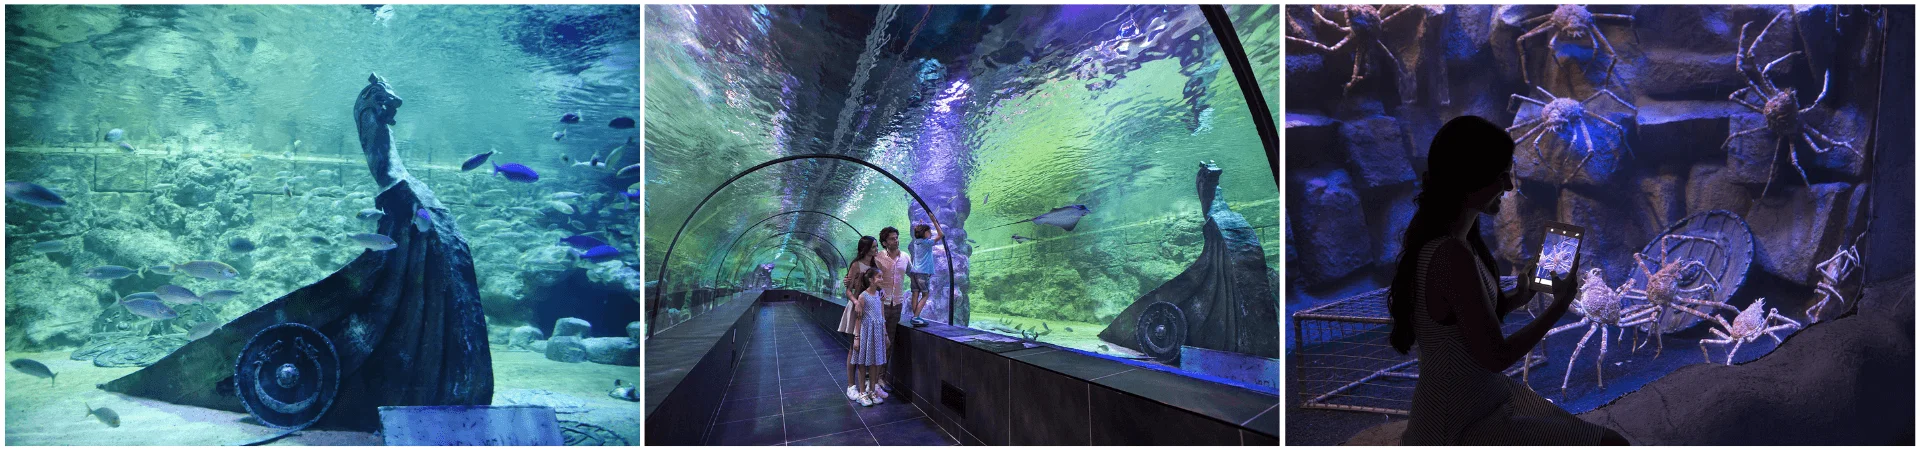 Viasea Aquarium & Crocodile Park Entrance